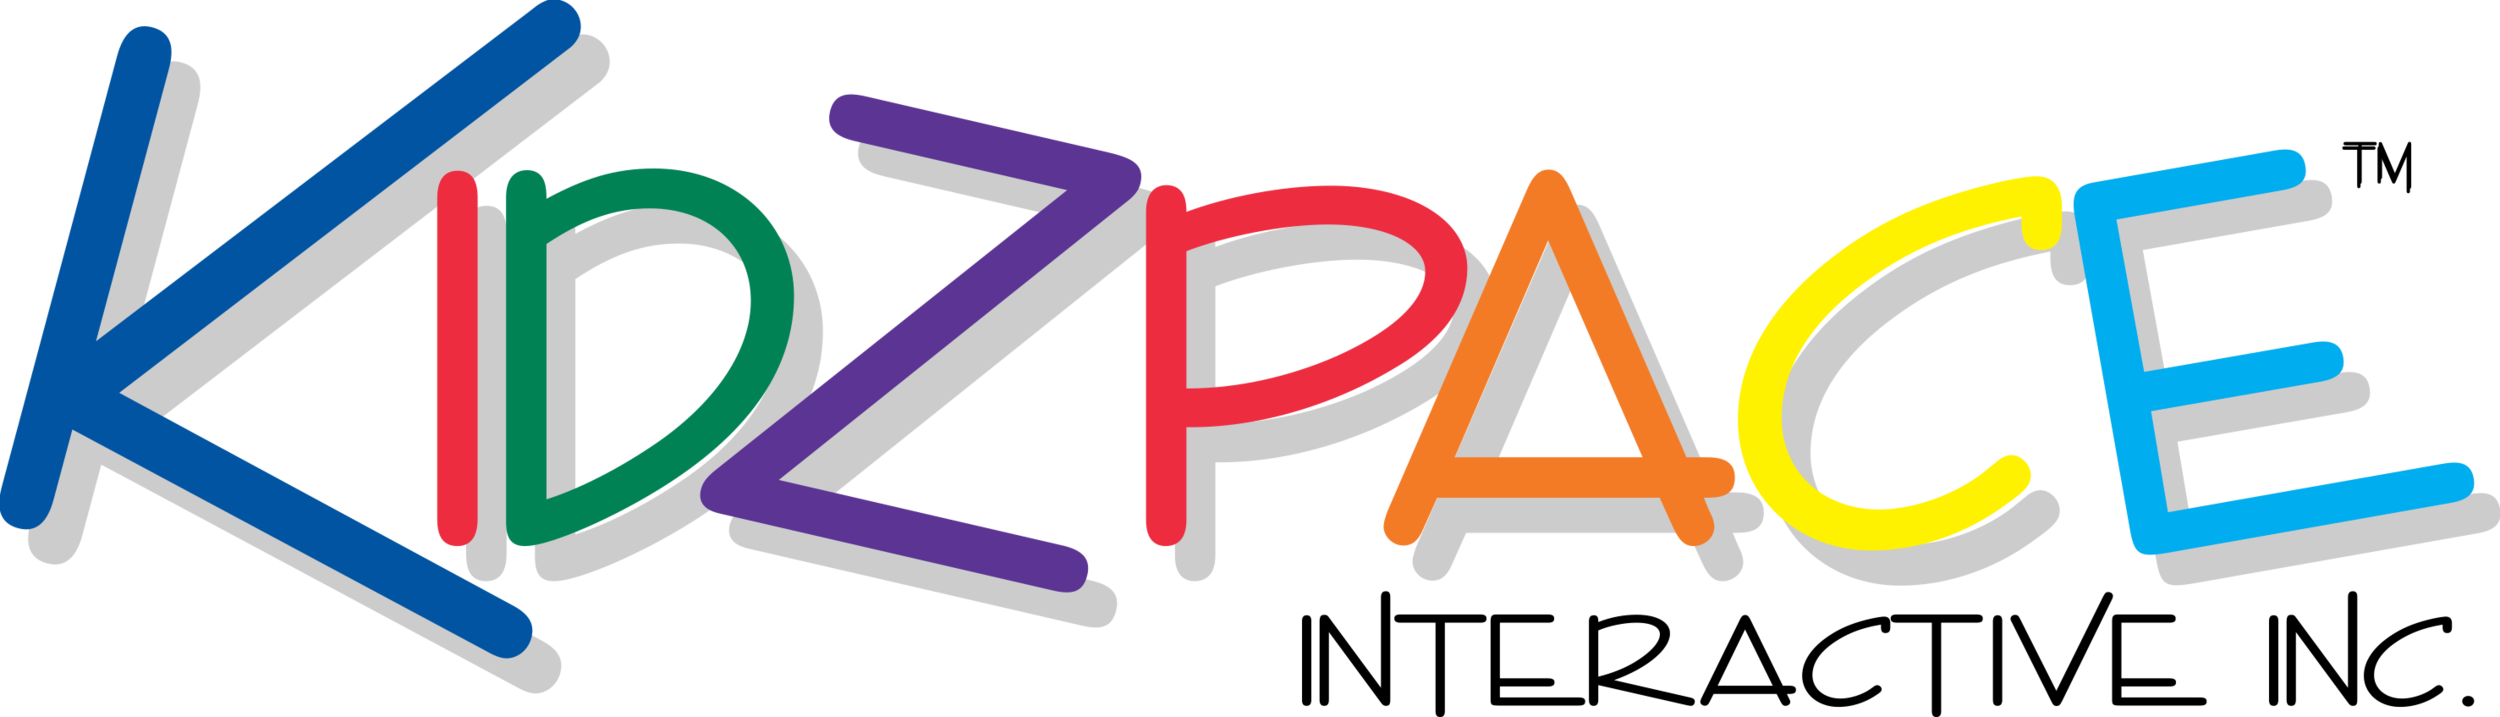 Kidzpace Logo.png